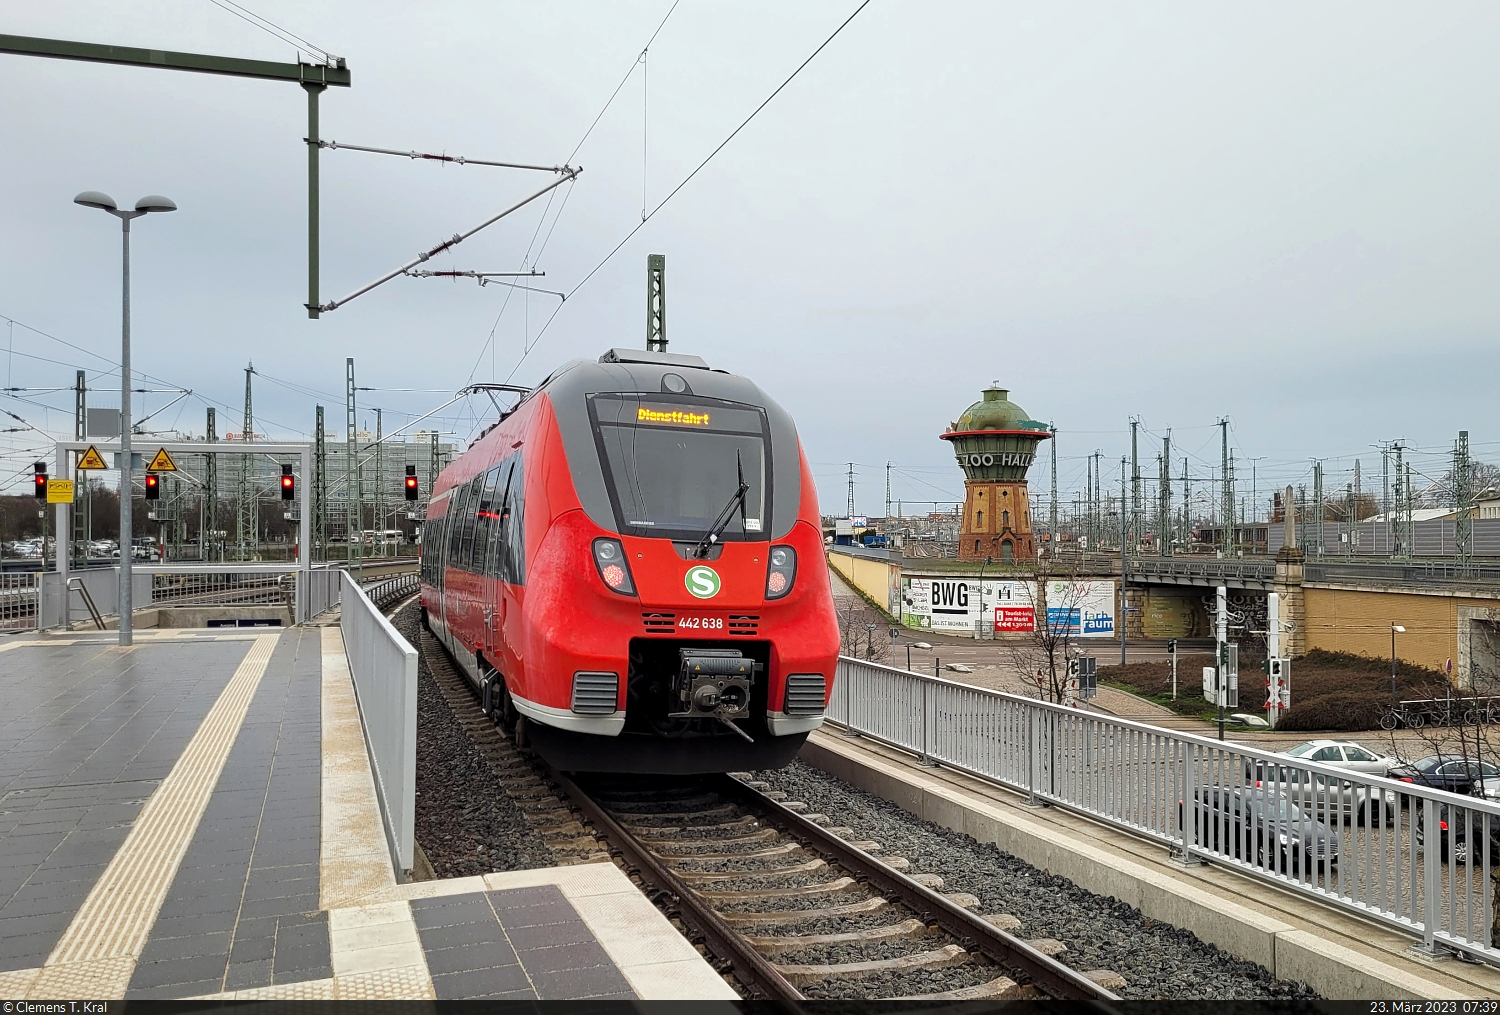 Der aus dem Cottbuser Netz stammende S-Bahn-Hamster 442 638 (Bombardier Talent 2) legt auf seiner  Dienstfahrt  durch Gleis 7 von Halle(Saale)Hbf einen Signalhalt am Wasserturm ein.

🧰 S-Bahn Mitteldeutschland (DB Regio Südost)
🕓 23.3.2023 | 7:39 Uhr